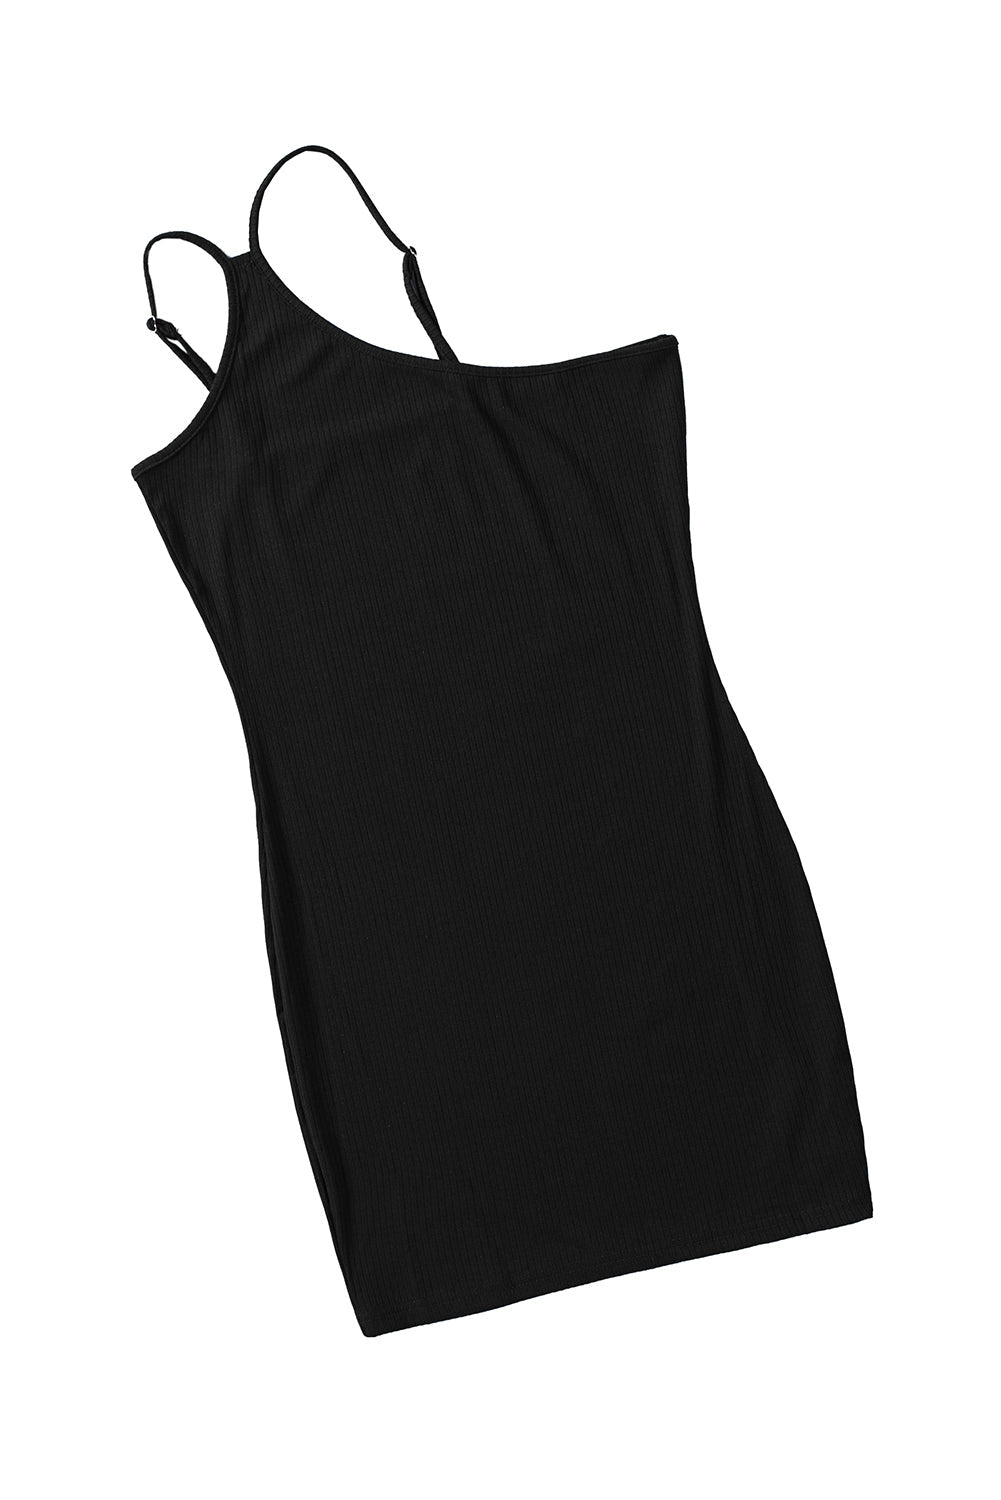 Ribbed Sleeveless One Shoulder Black Mini Dress for Women